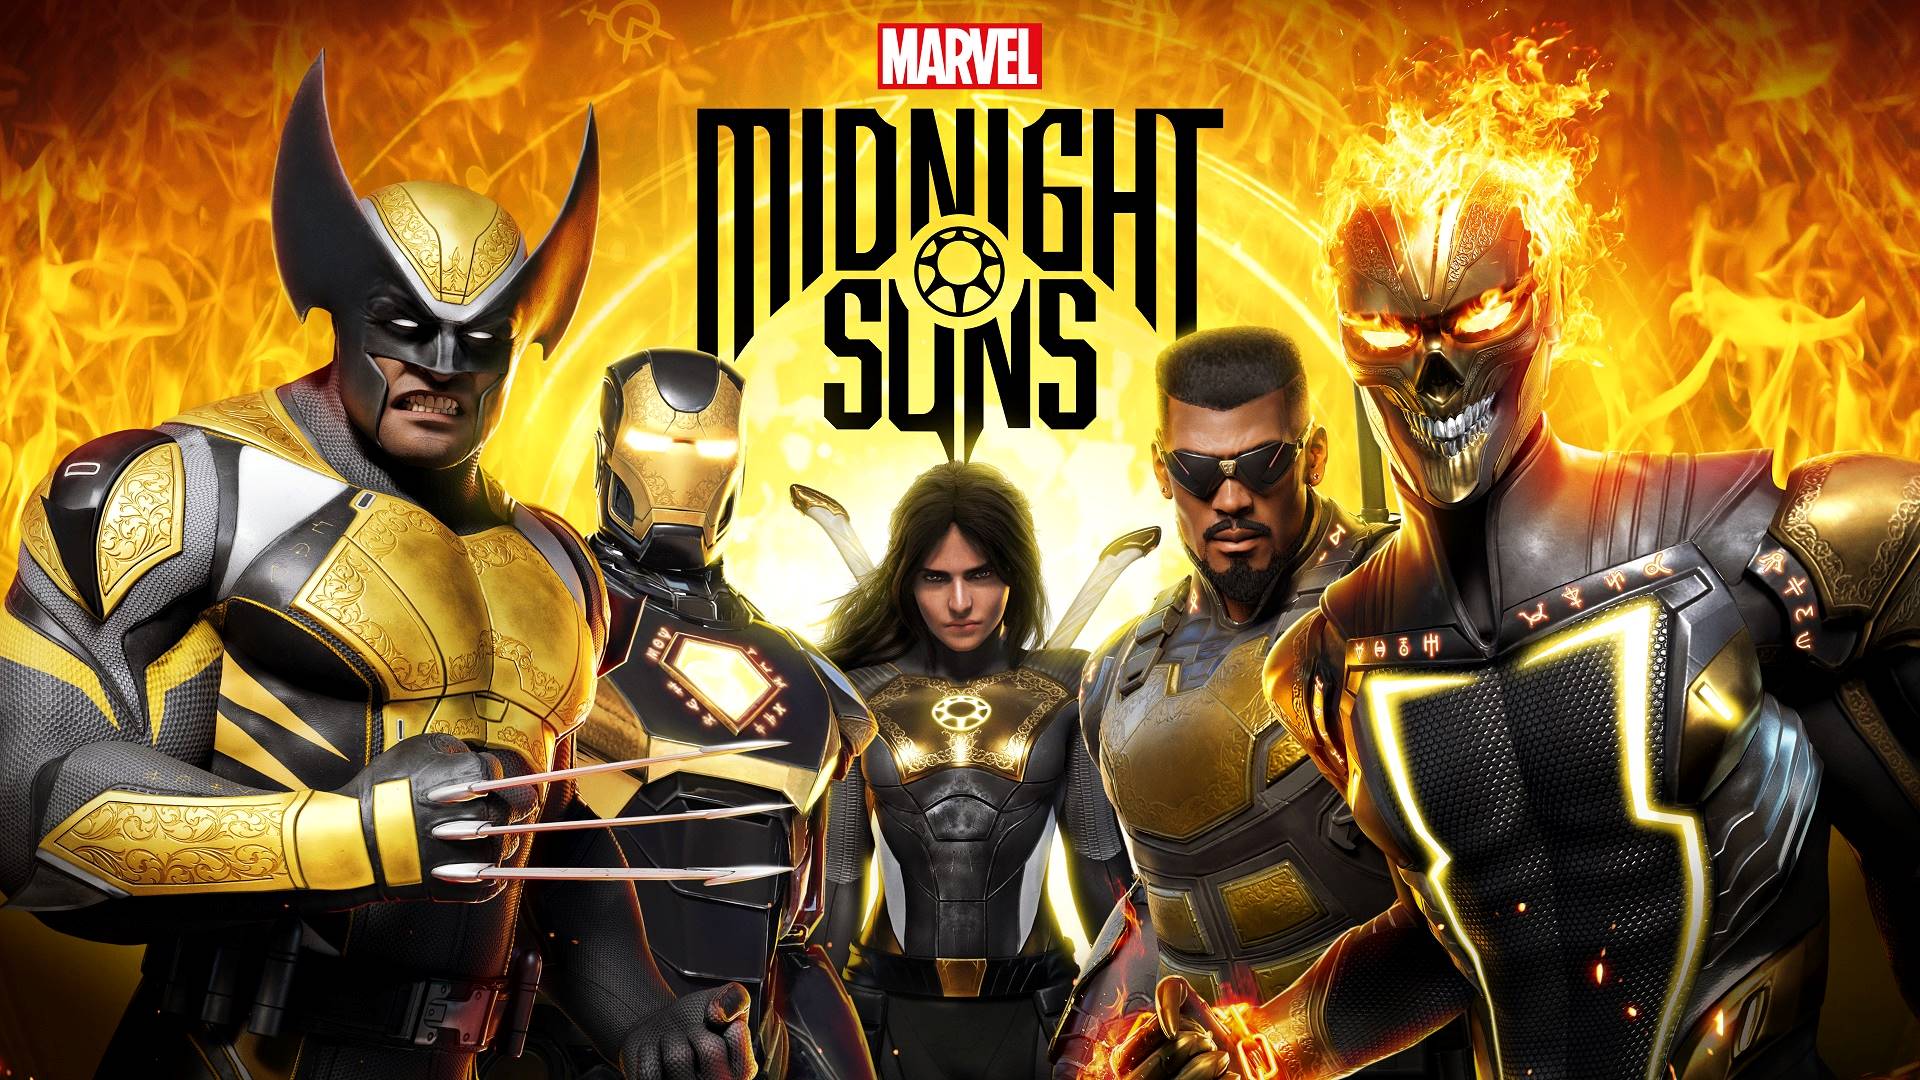 نمایش توانایی های نیکو در تریلر بازی Marvel’s Midnight Sun